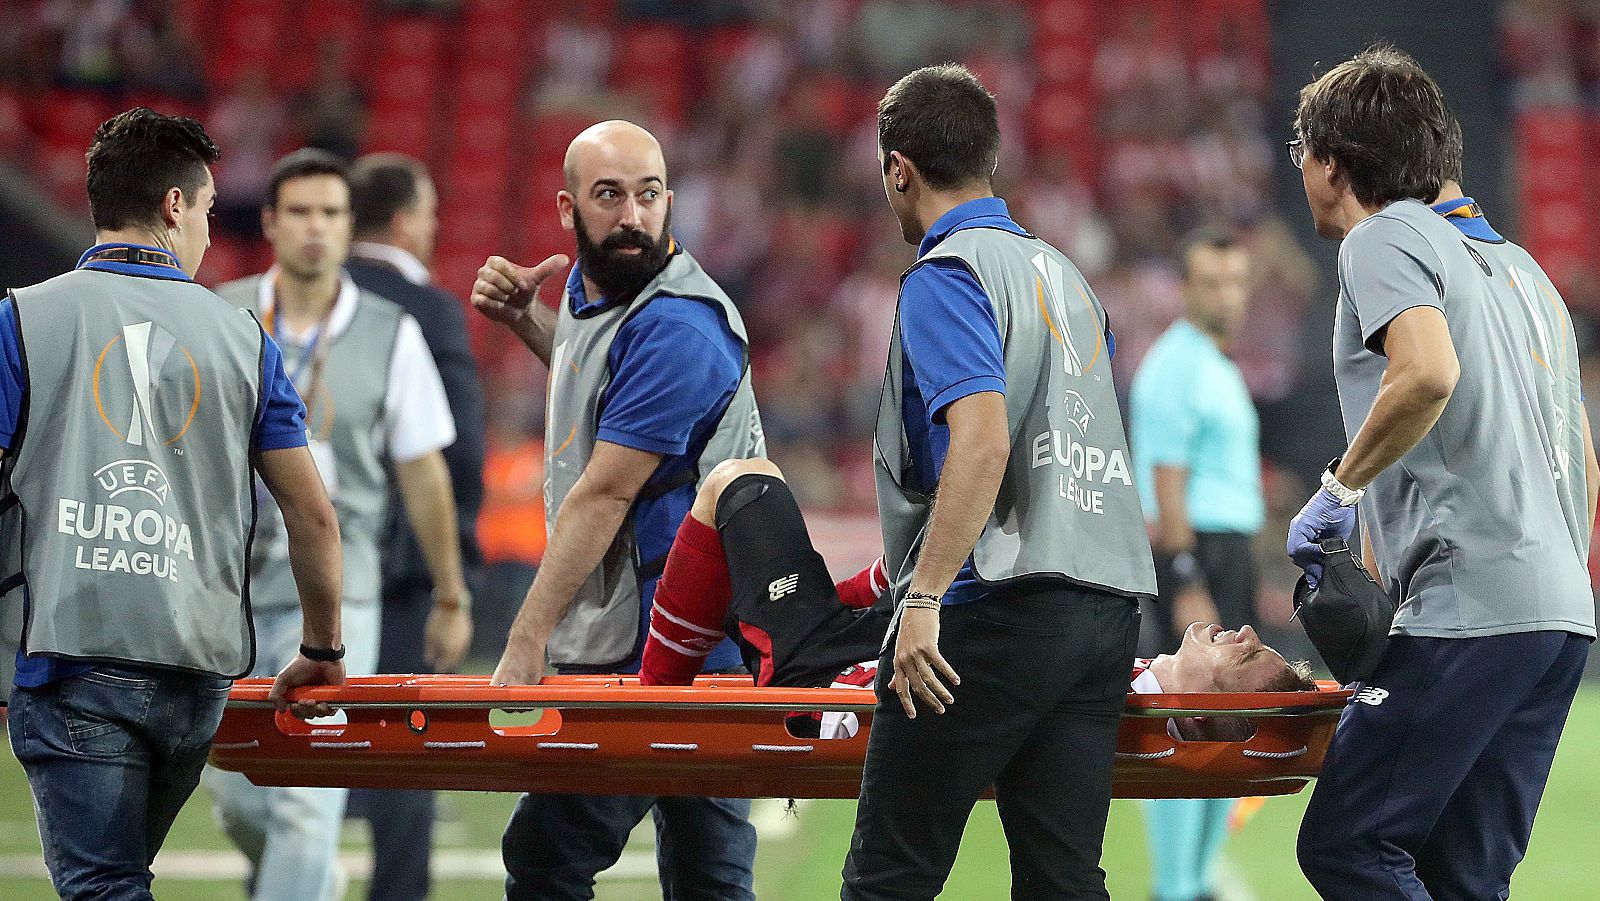 El delantero del Athletic de Bilbao Iker Muniain es retirado en camilla durante el partido ante el Zorya.